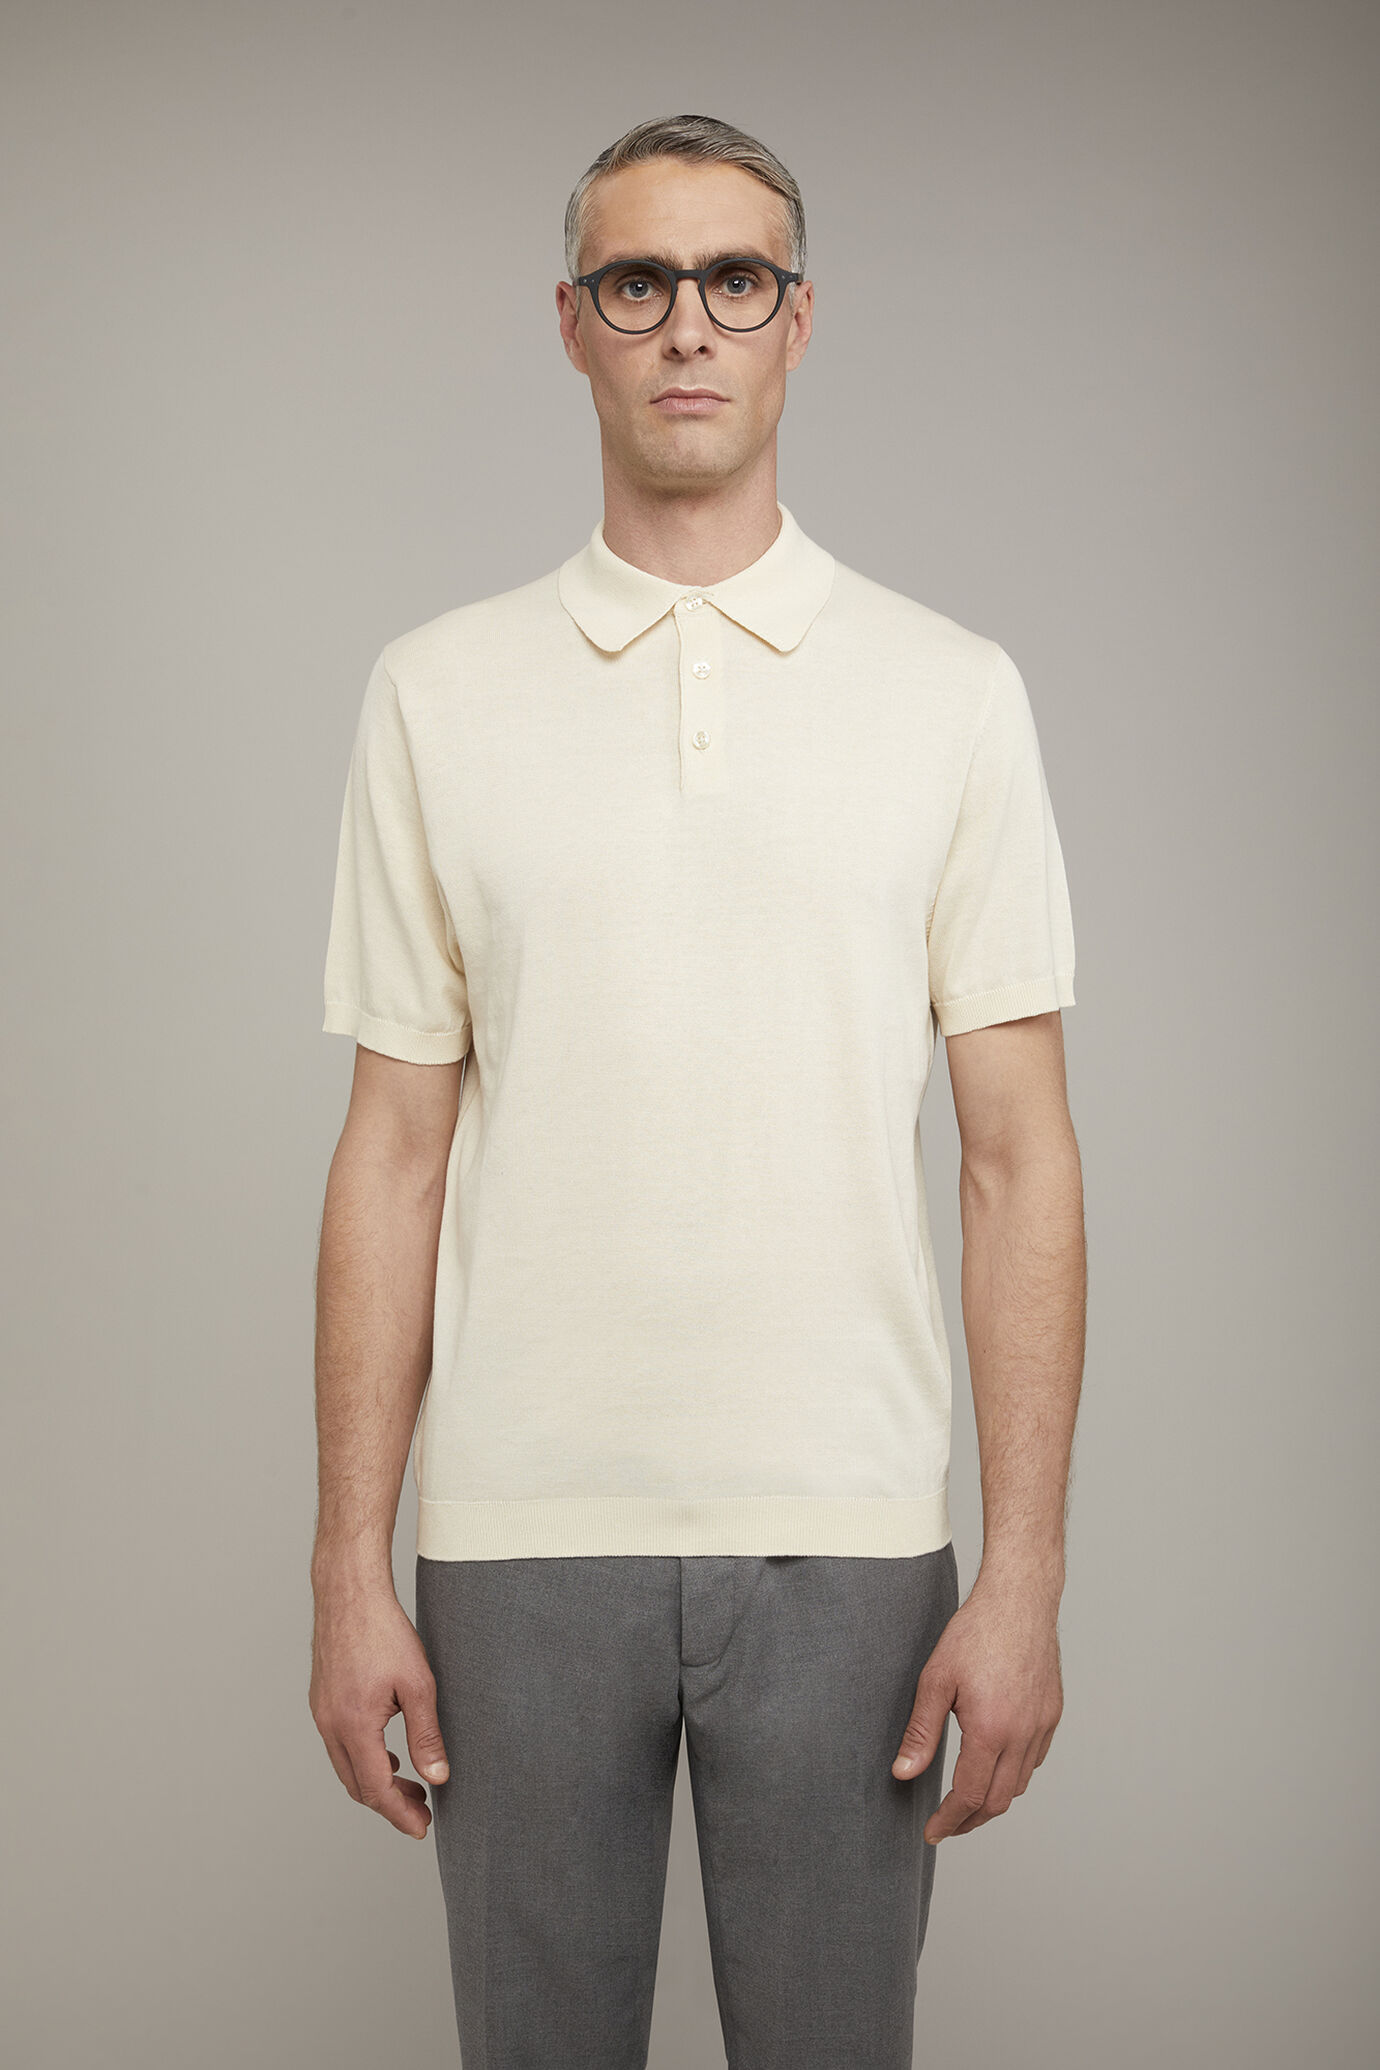 Herren-Poloshirt aus 100 % Baumwolle mit kurzen Ärmeln in normaler Passform